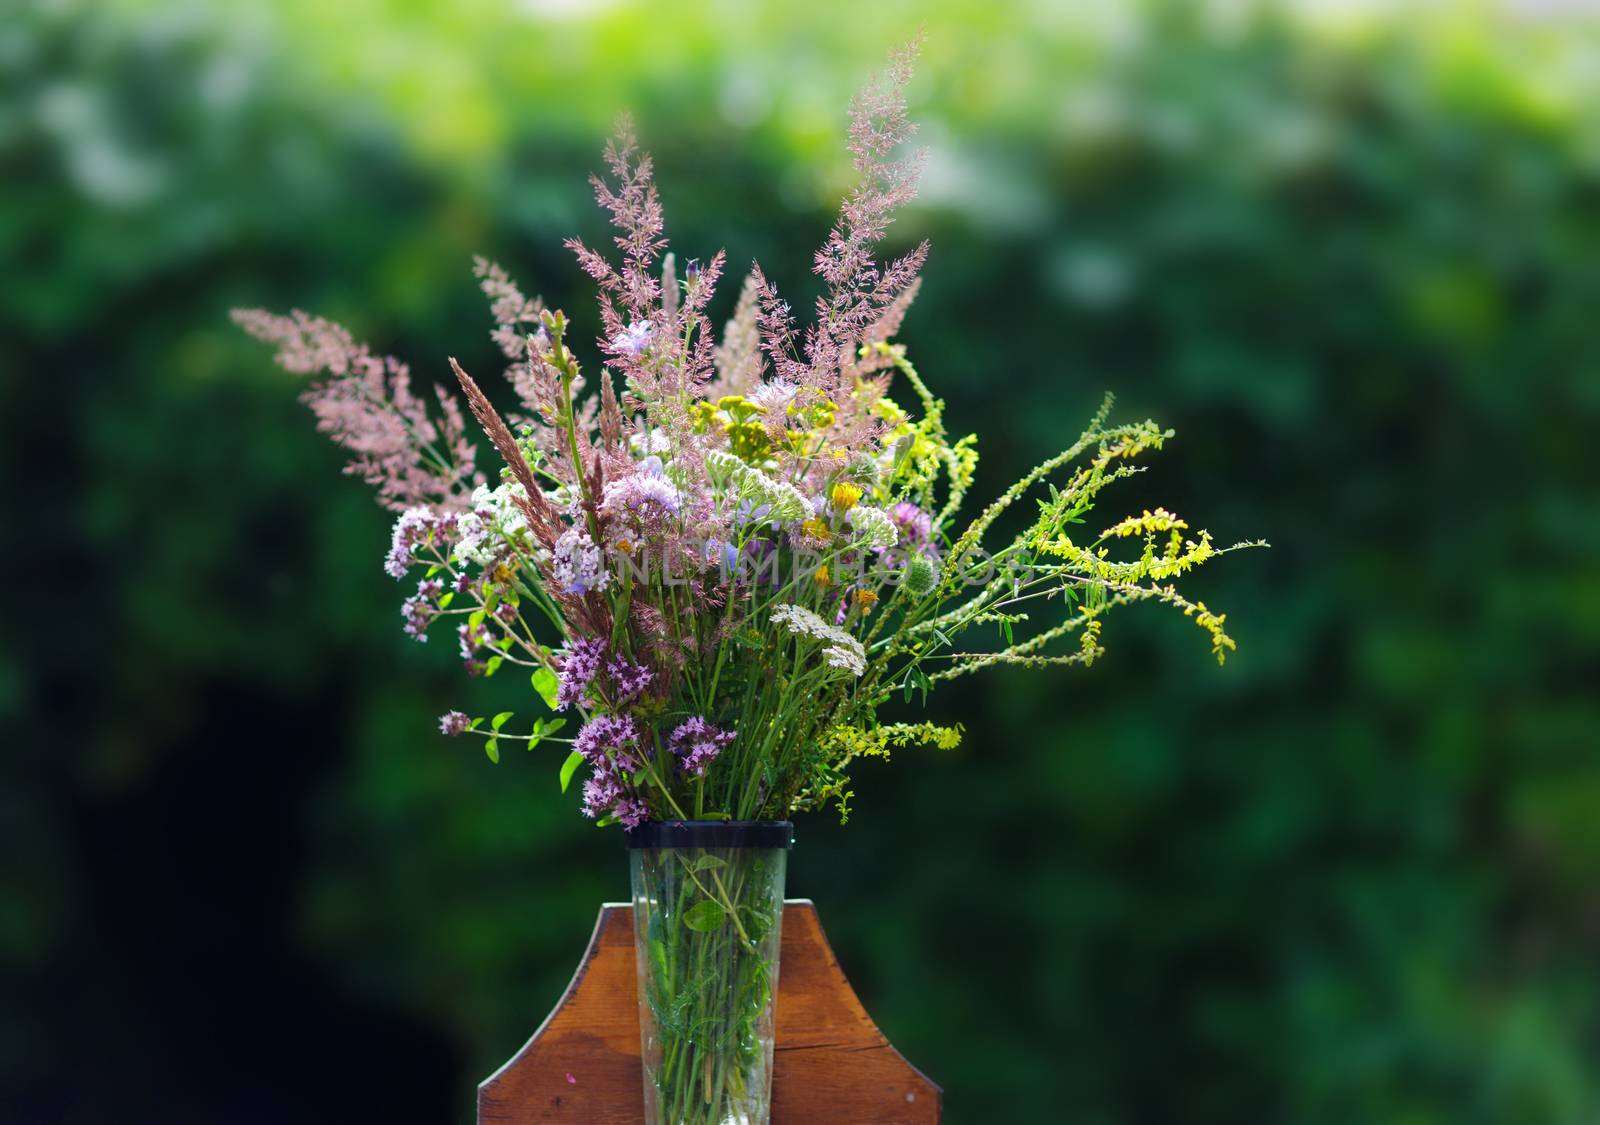 Bouquet of wild flowers in vase in a garden by galinasharapova